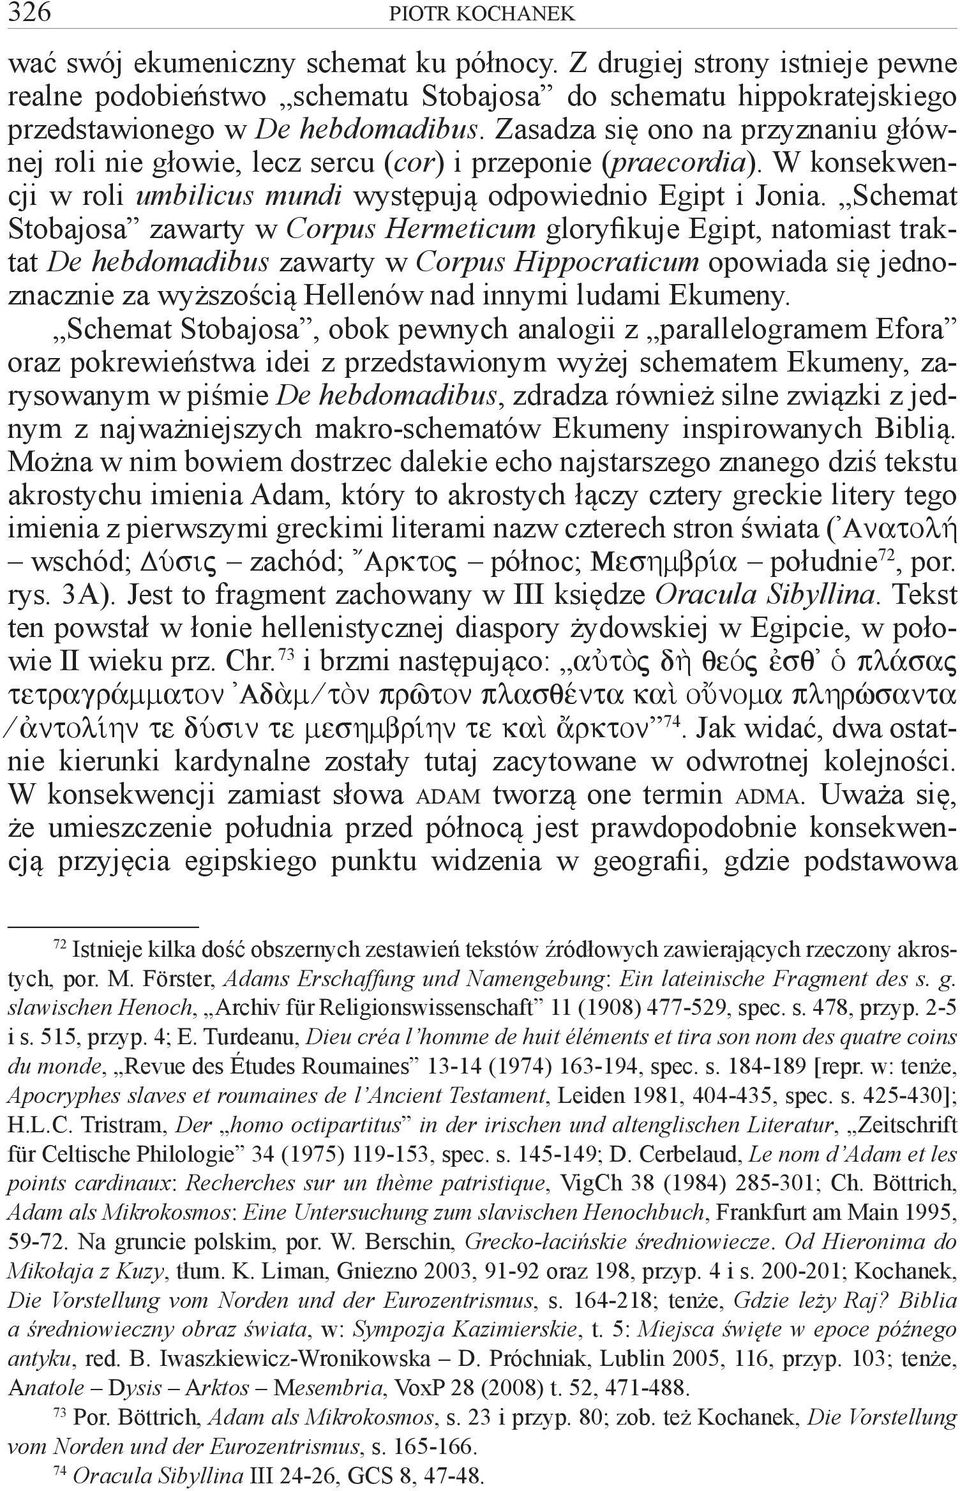 Schemat Stobajosa zawarty w Corpus Hermeticum gloryfikuje Egipt, natomiast traktat De hebdomadibus zawarty w Corpus Hippocraticum opowiada się jednoznacznie za wyższością Hellenów nad innymi ludami